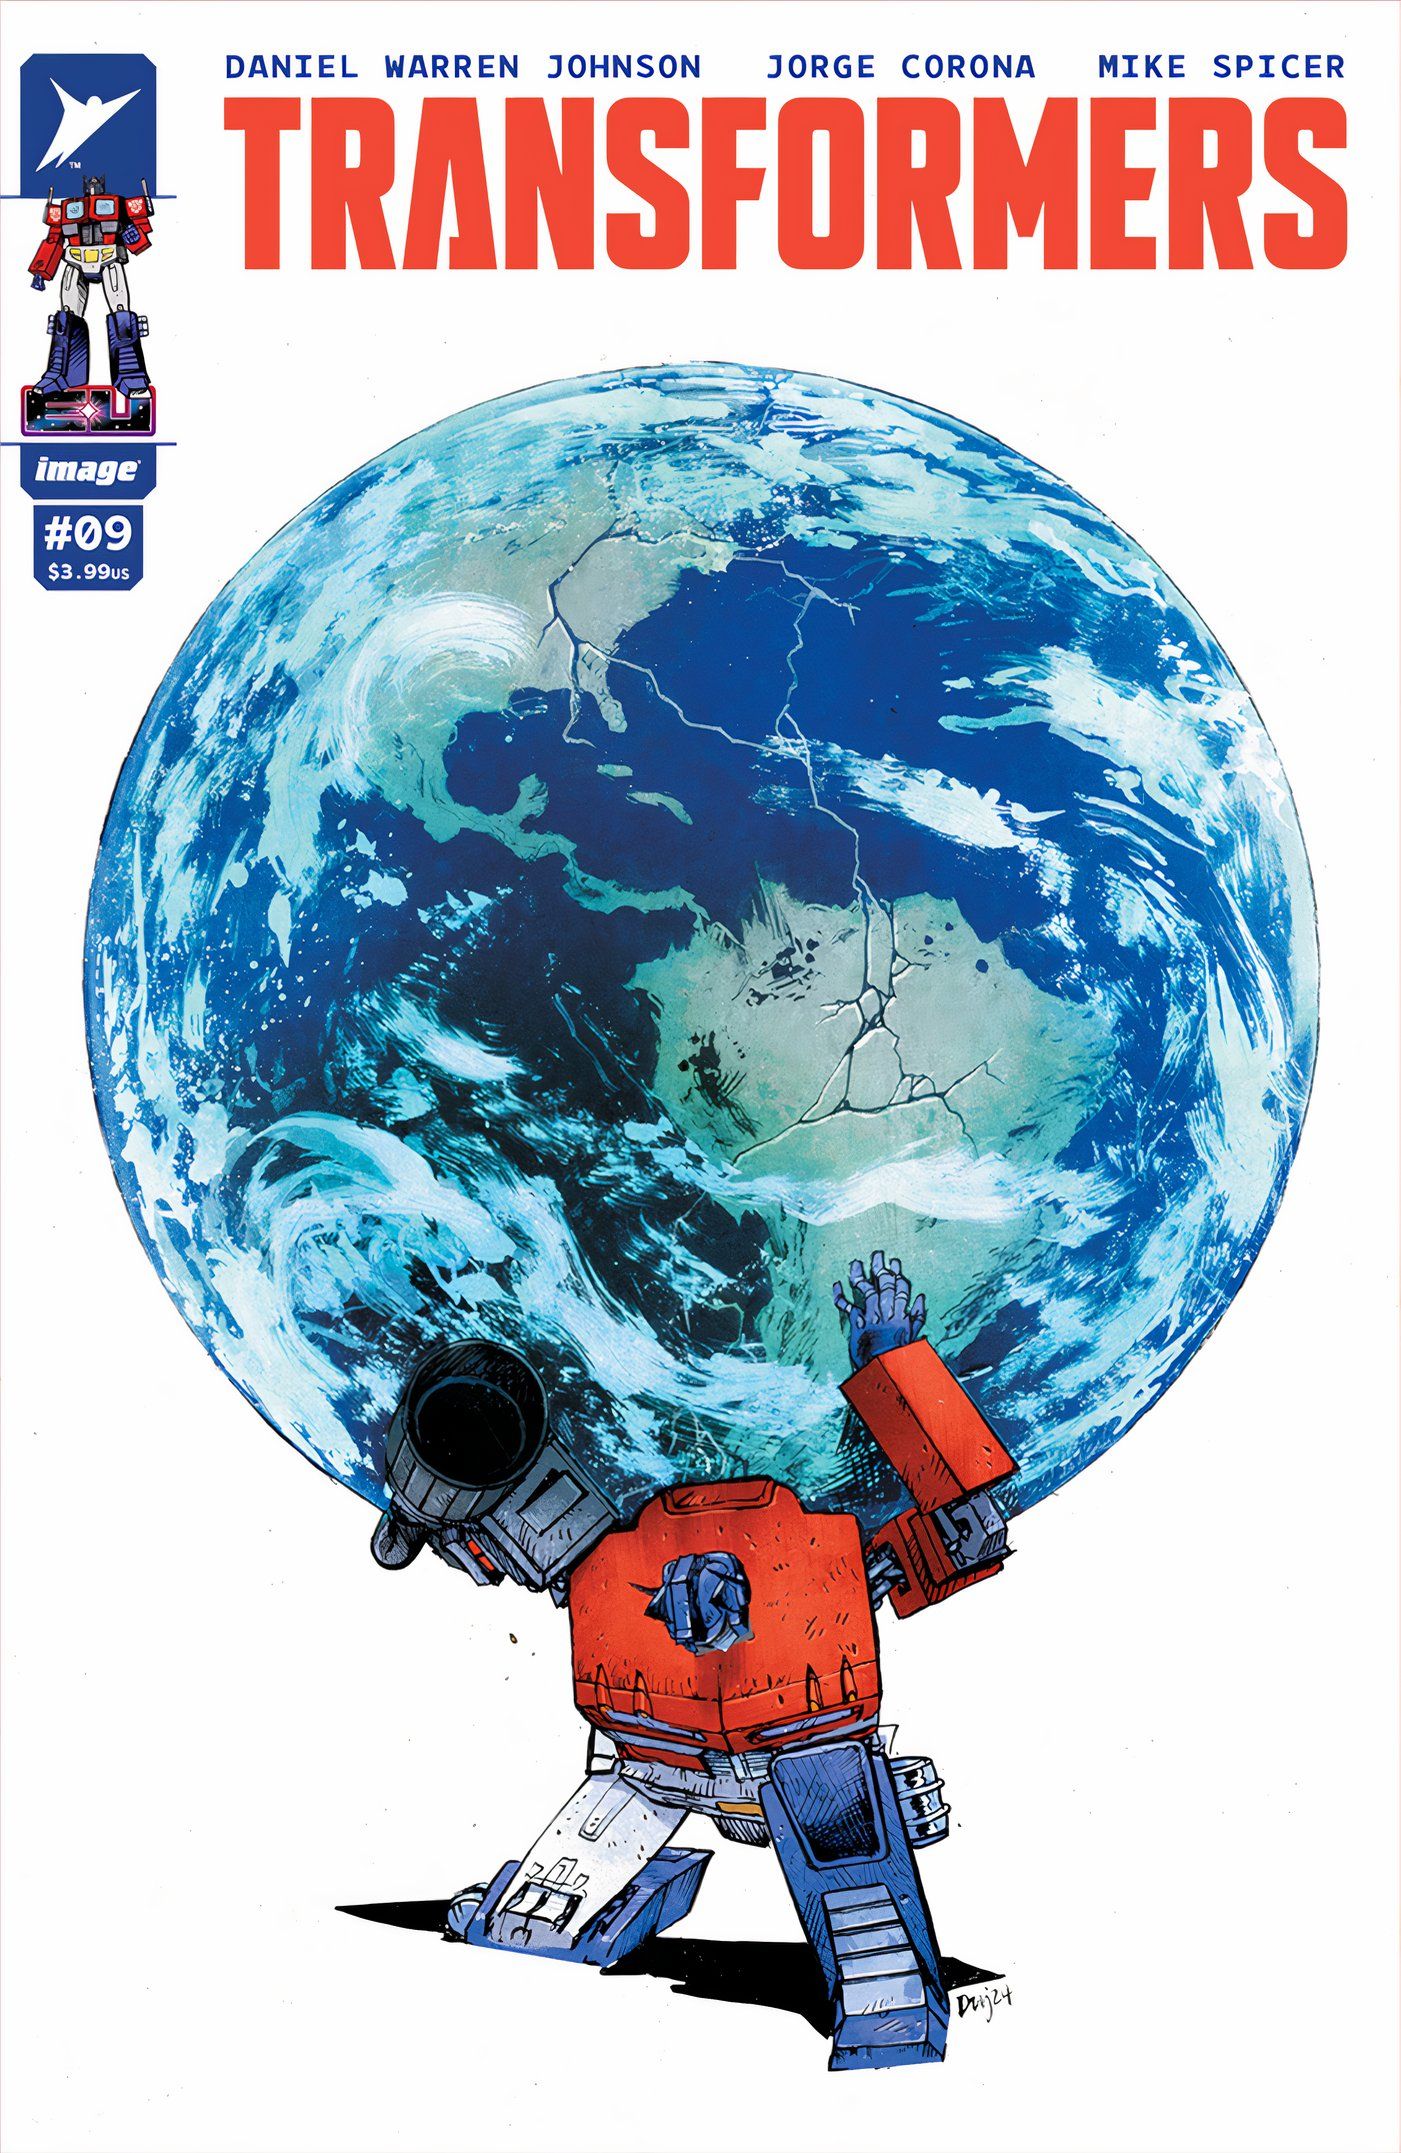 Capa de Transformers #9, Optimus Prime segurando o mundo em seus ombros como Atlas.